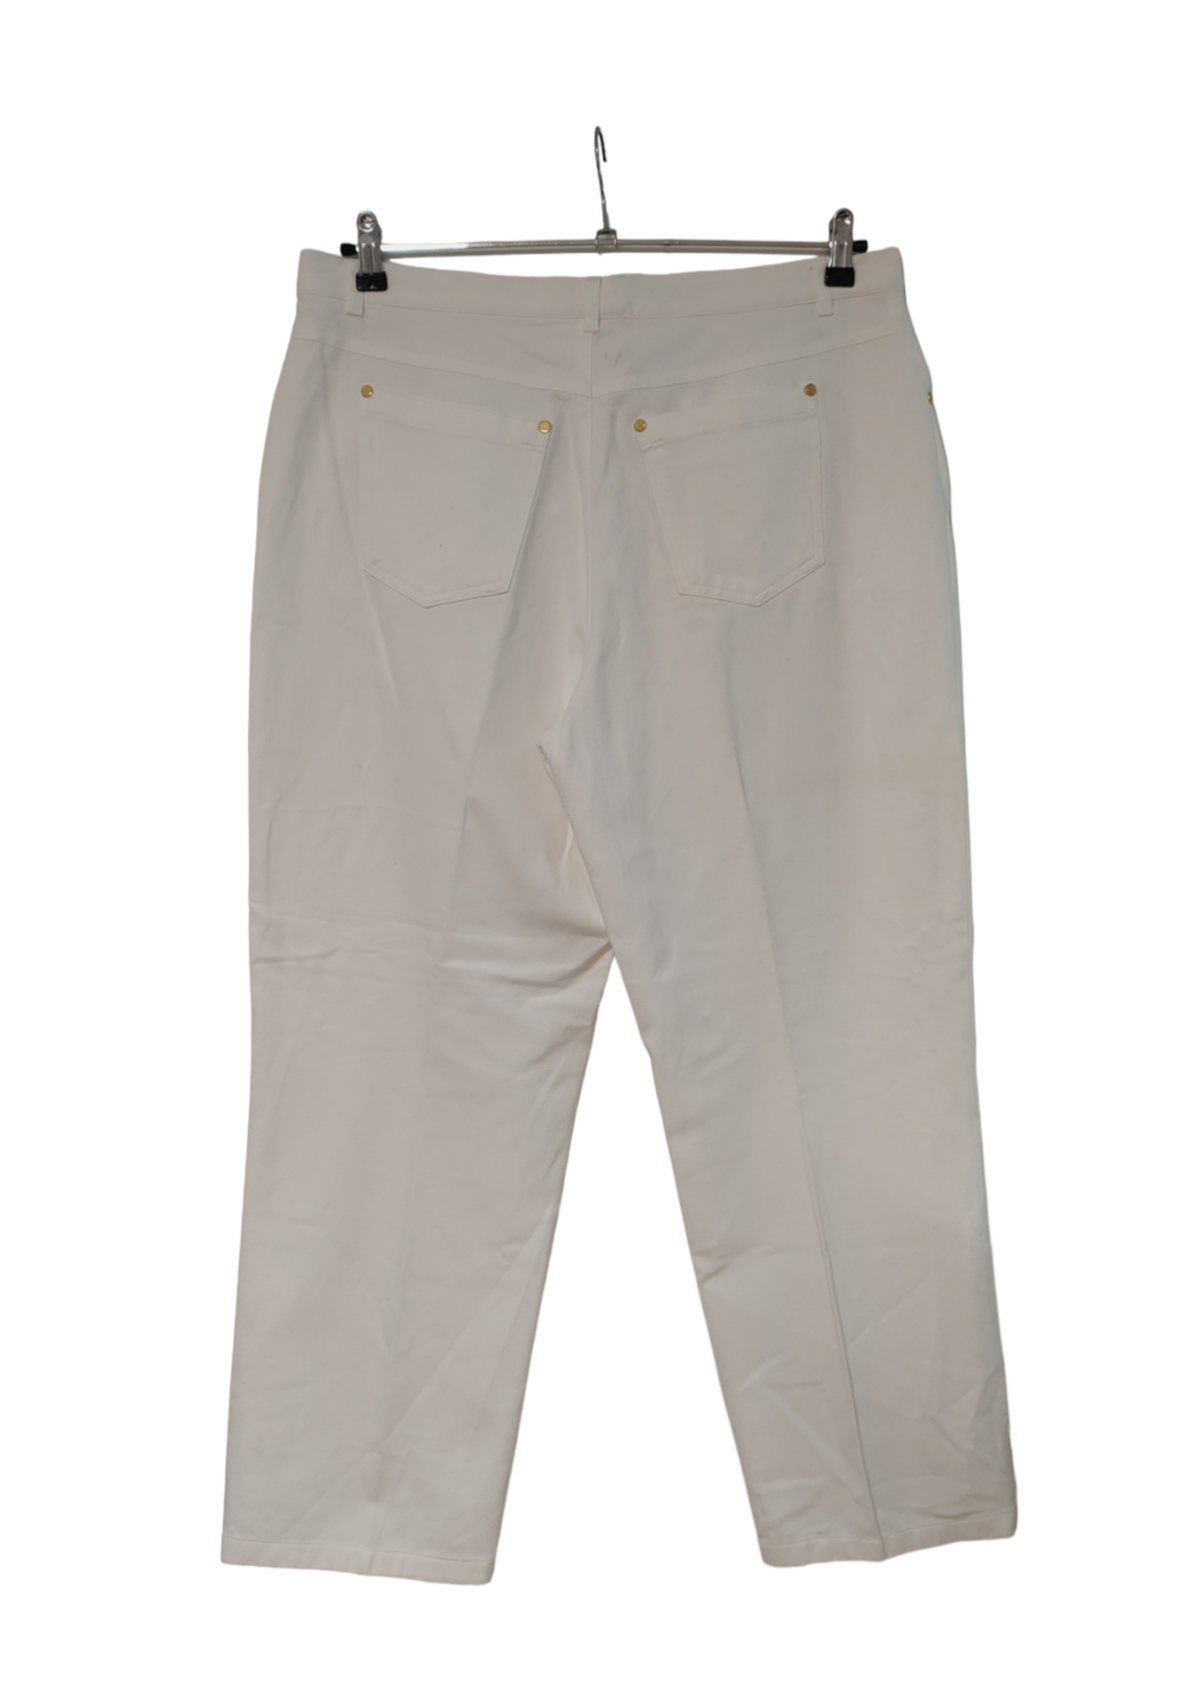 Ανοιξιάτικο Γυναικείο Παντελόνι LUCIA SPORTS σε Λευκό χρώμα (XL/2XL)